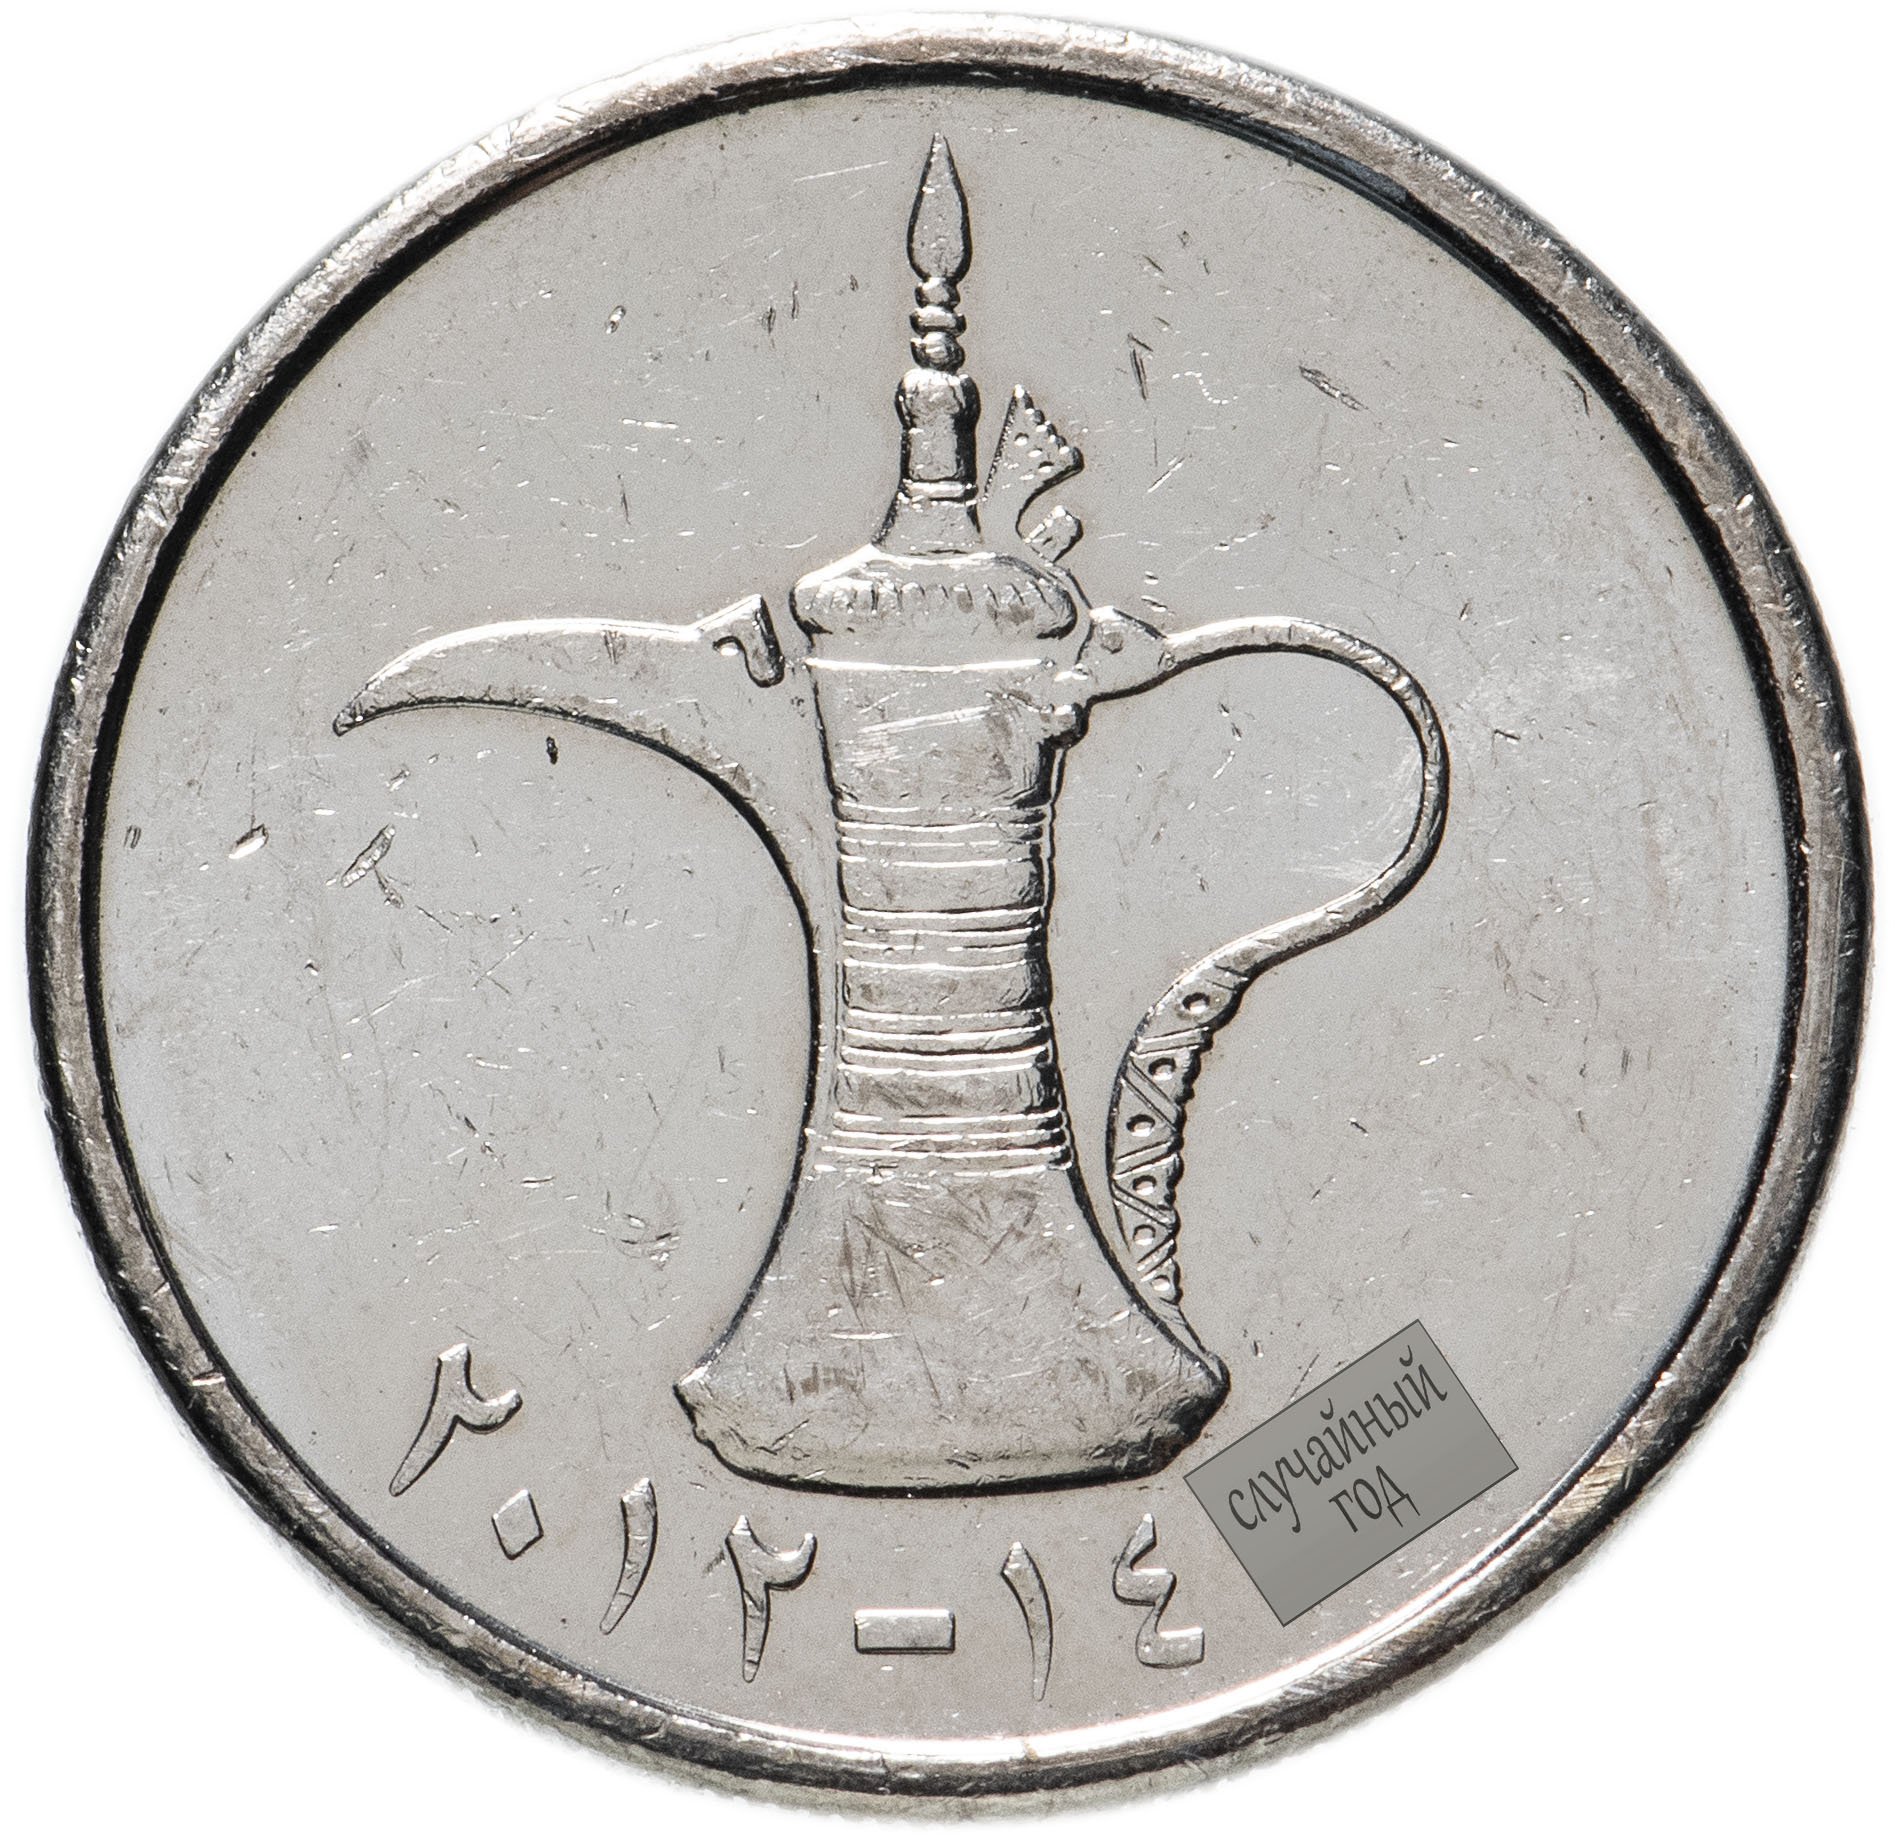 69 дирхам. Монета 1 дирхам (ОАЭ) арабские эмираты.. Монеты арабских Эмиратов 1 дирхам. United arab Emirates монета 1. 10 Дирхам монета.